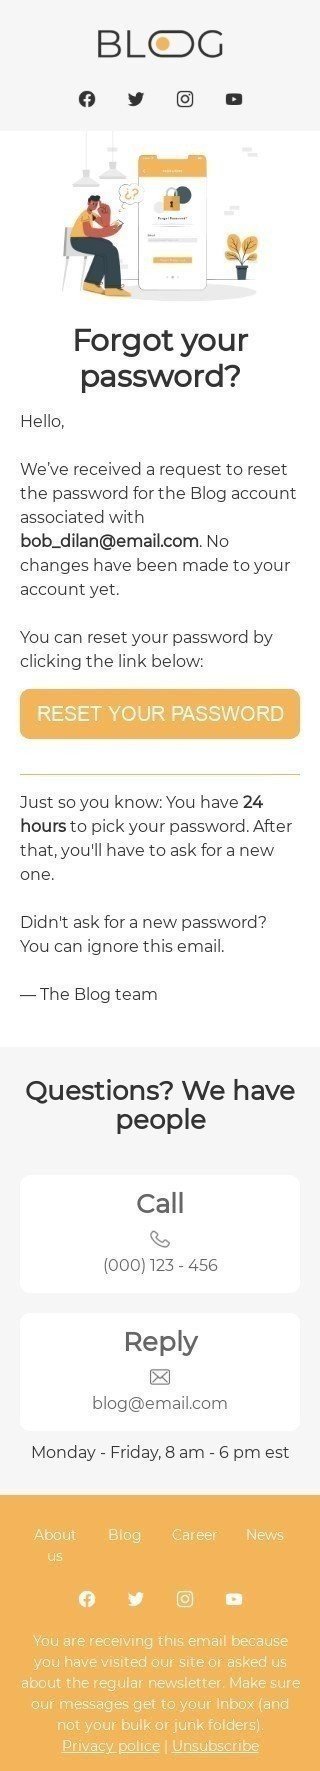 Шаблон триггерного письма «Забыли пароль?» для индустрии «Публикации и Блог» мобильный вид